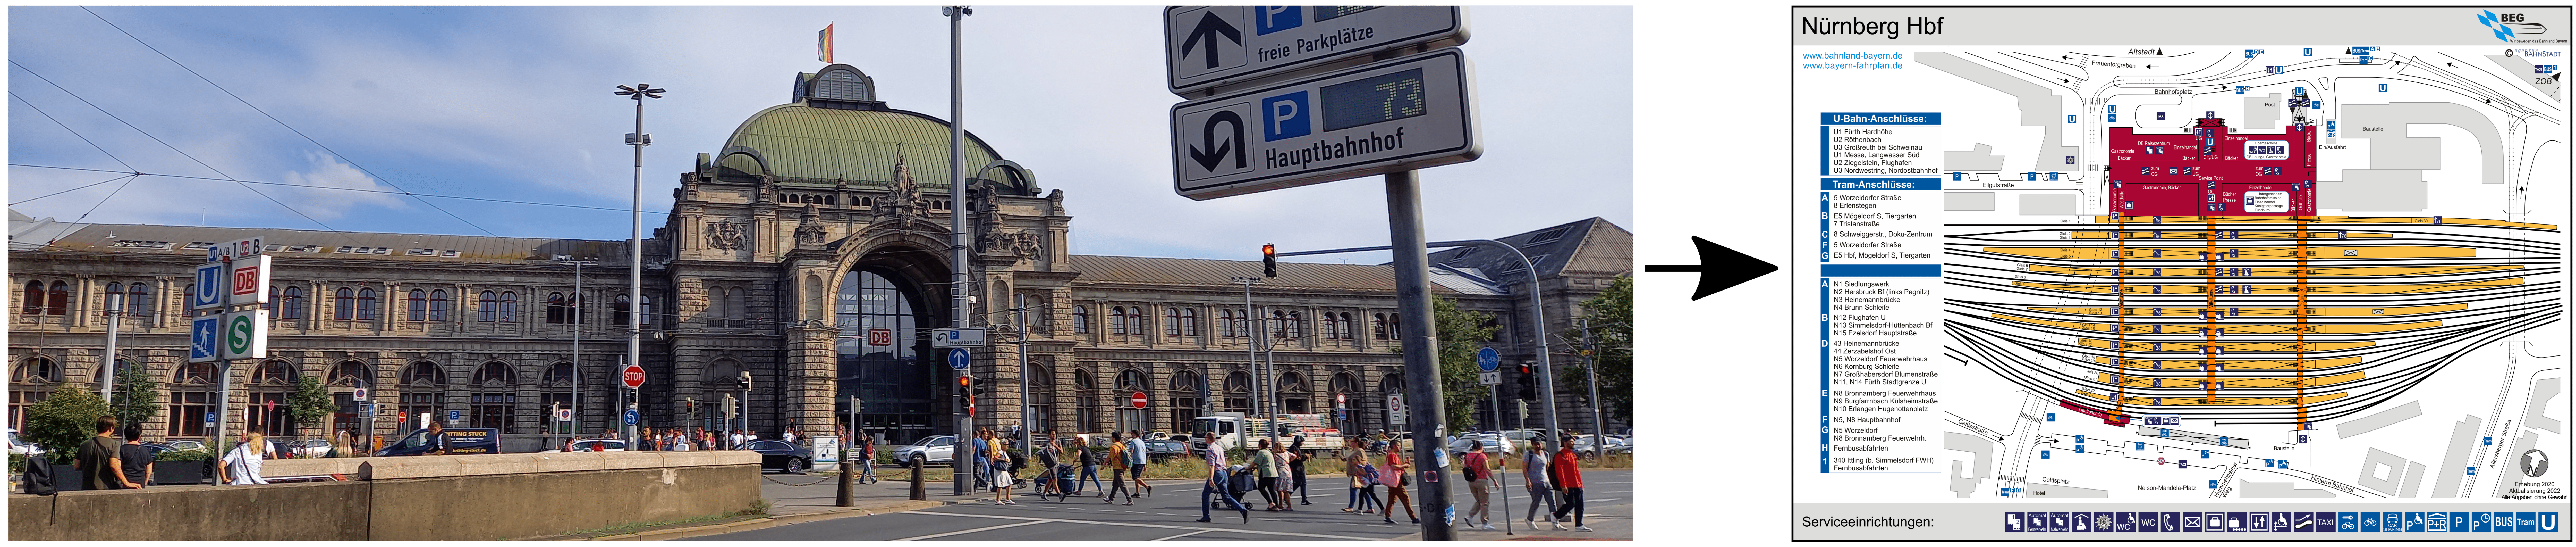 Nuremberg Railway station